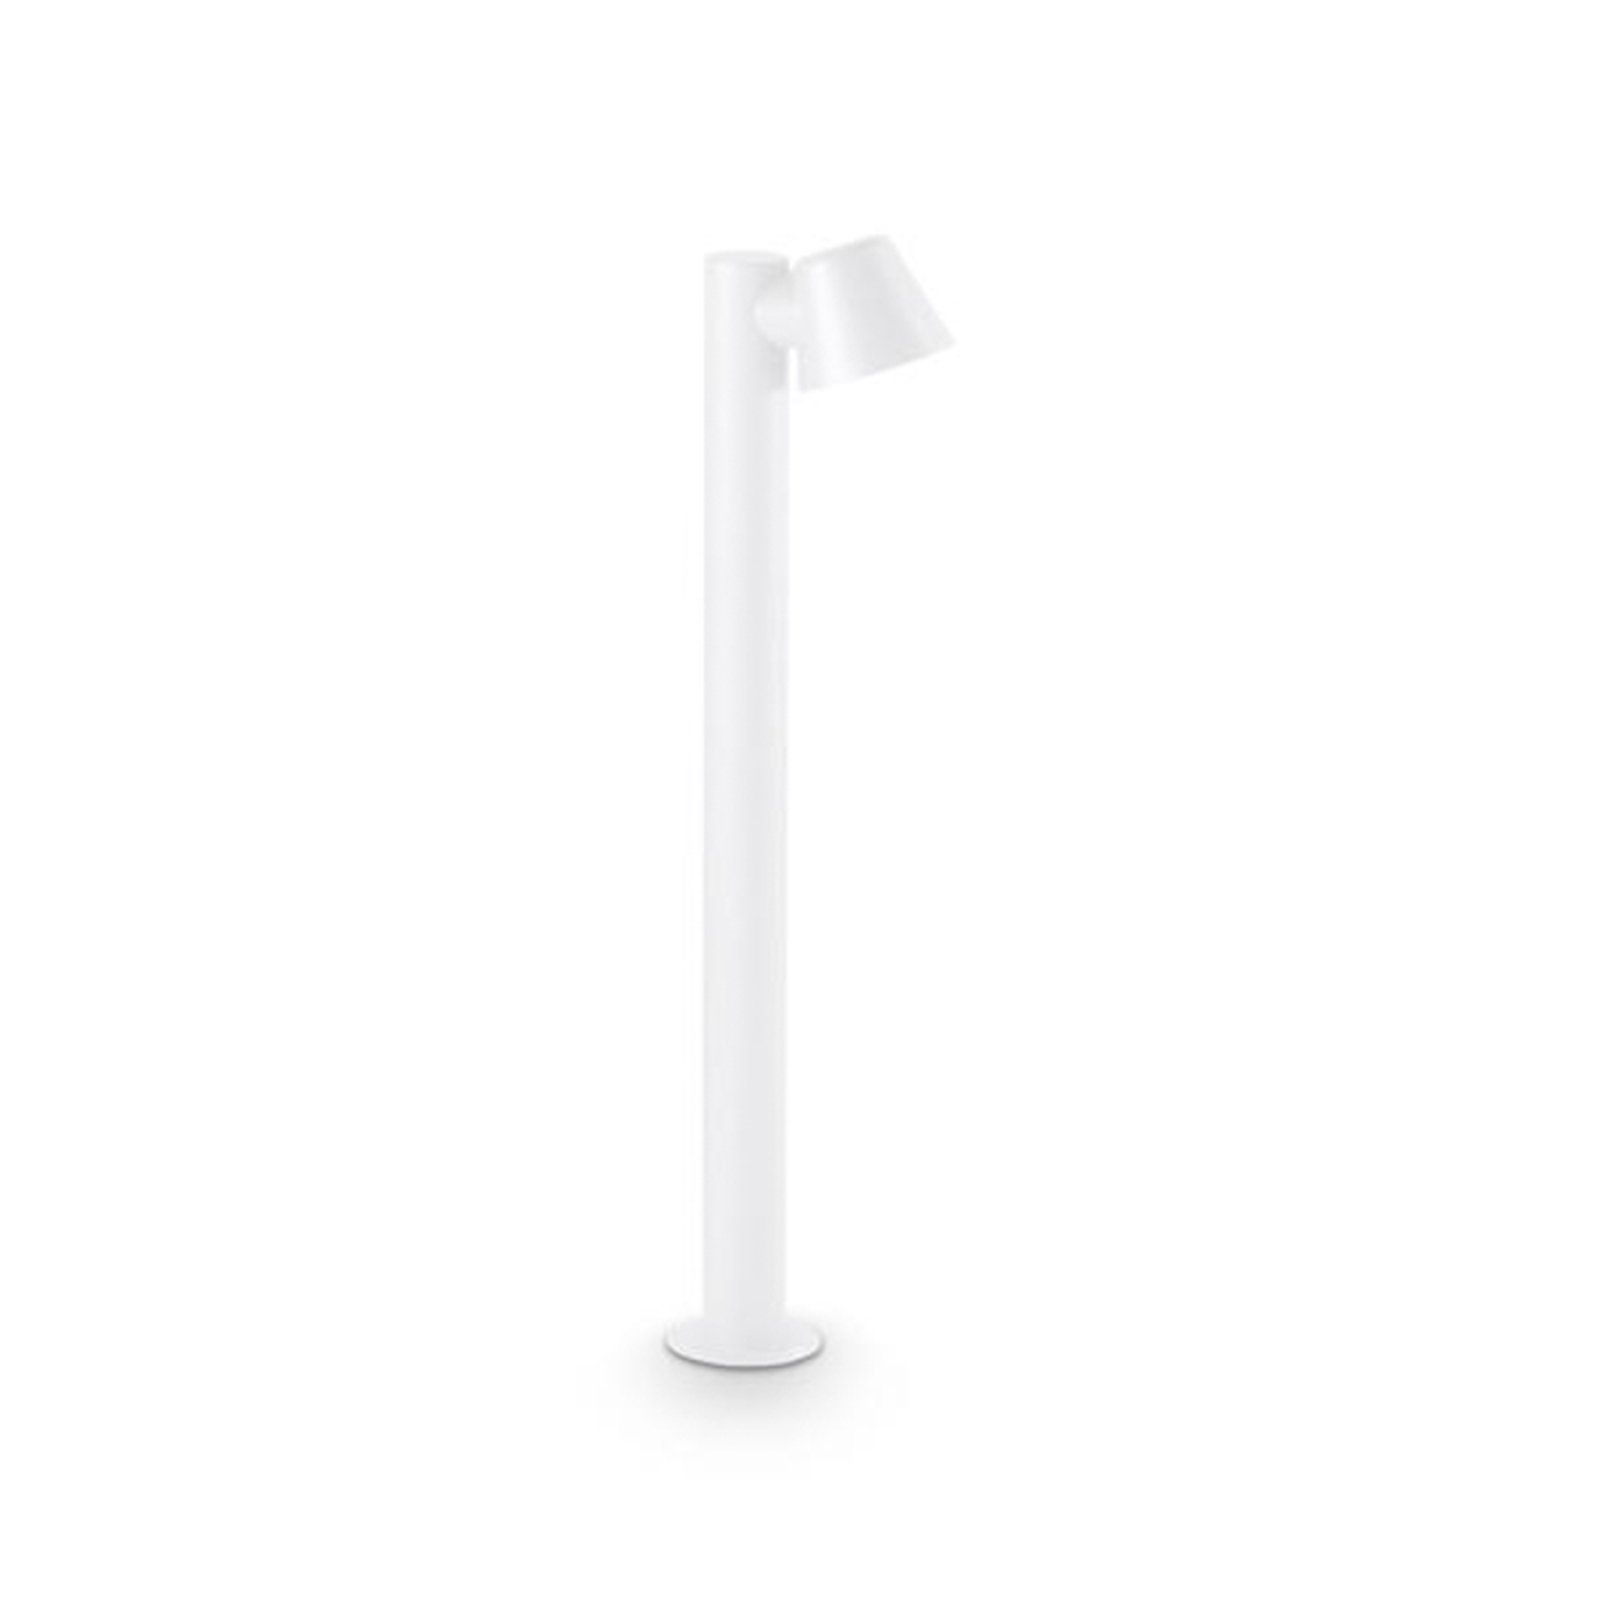 Ideal Lux lampione a gas, bianco, alluminio, altezza 80 cm